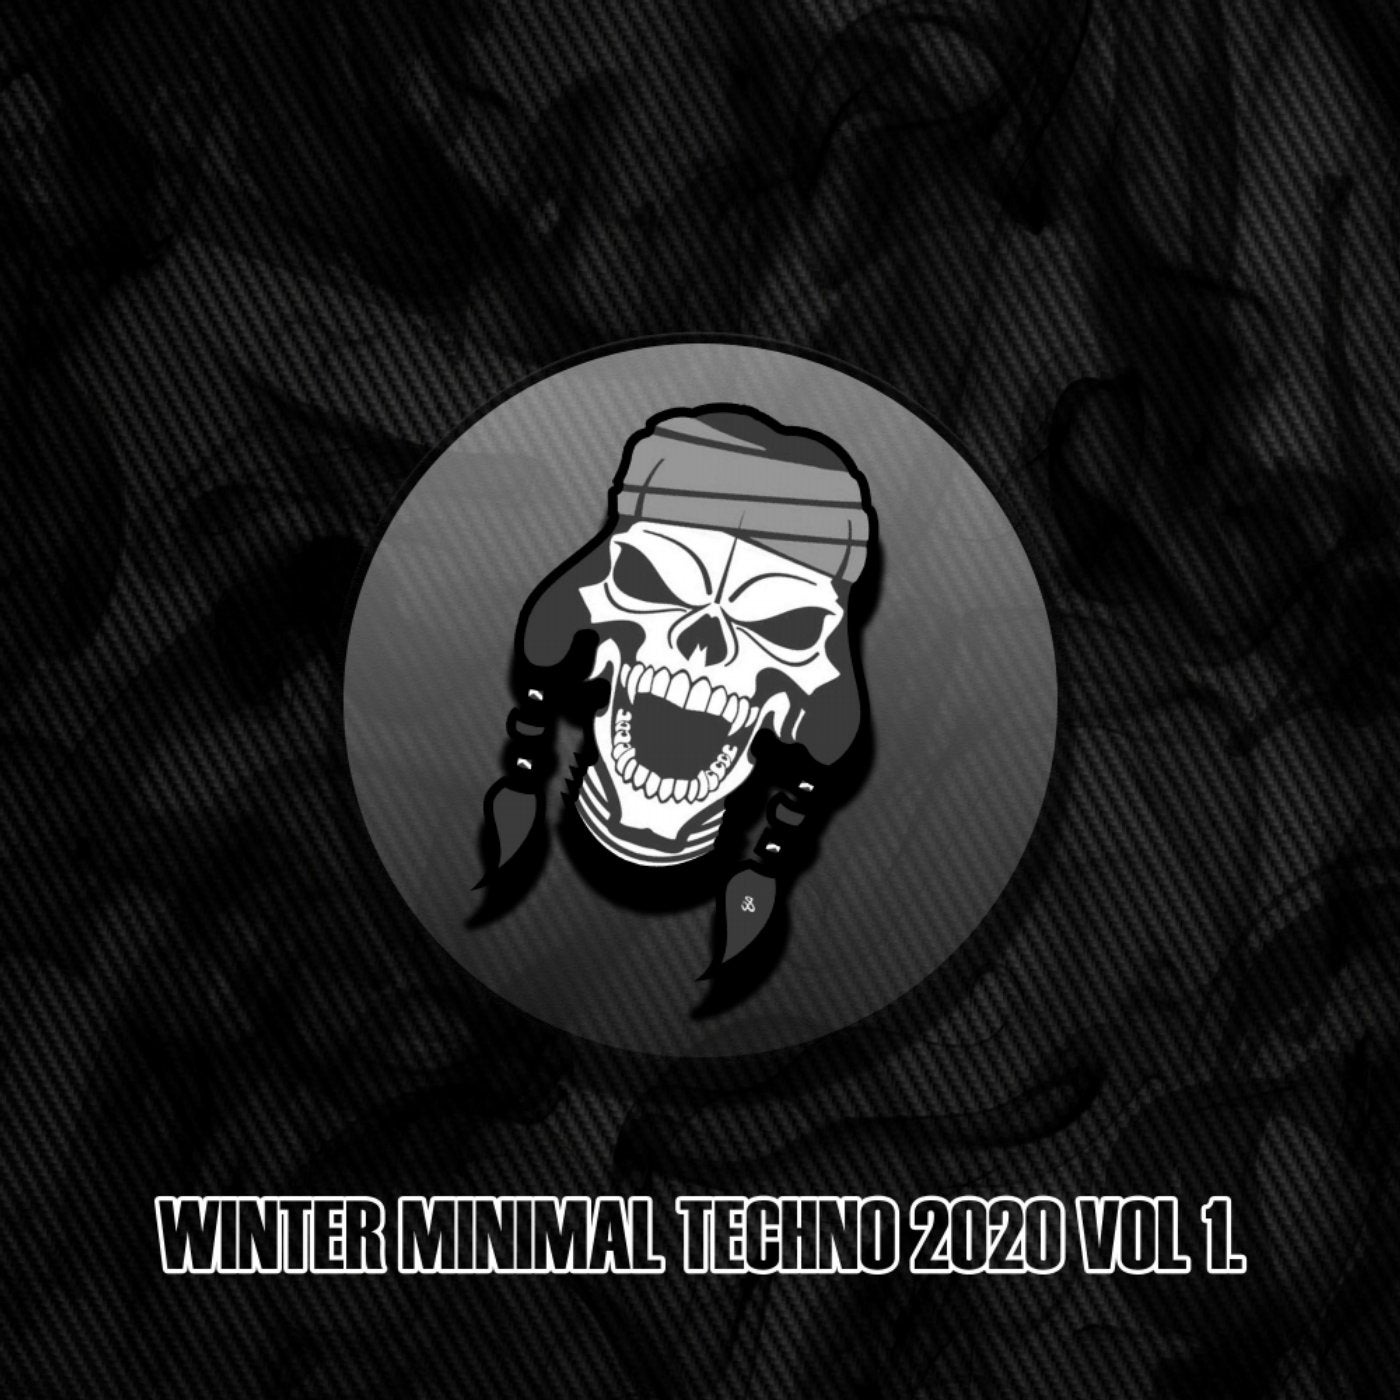 Winter Minimal Techno 2020 Vol. 1